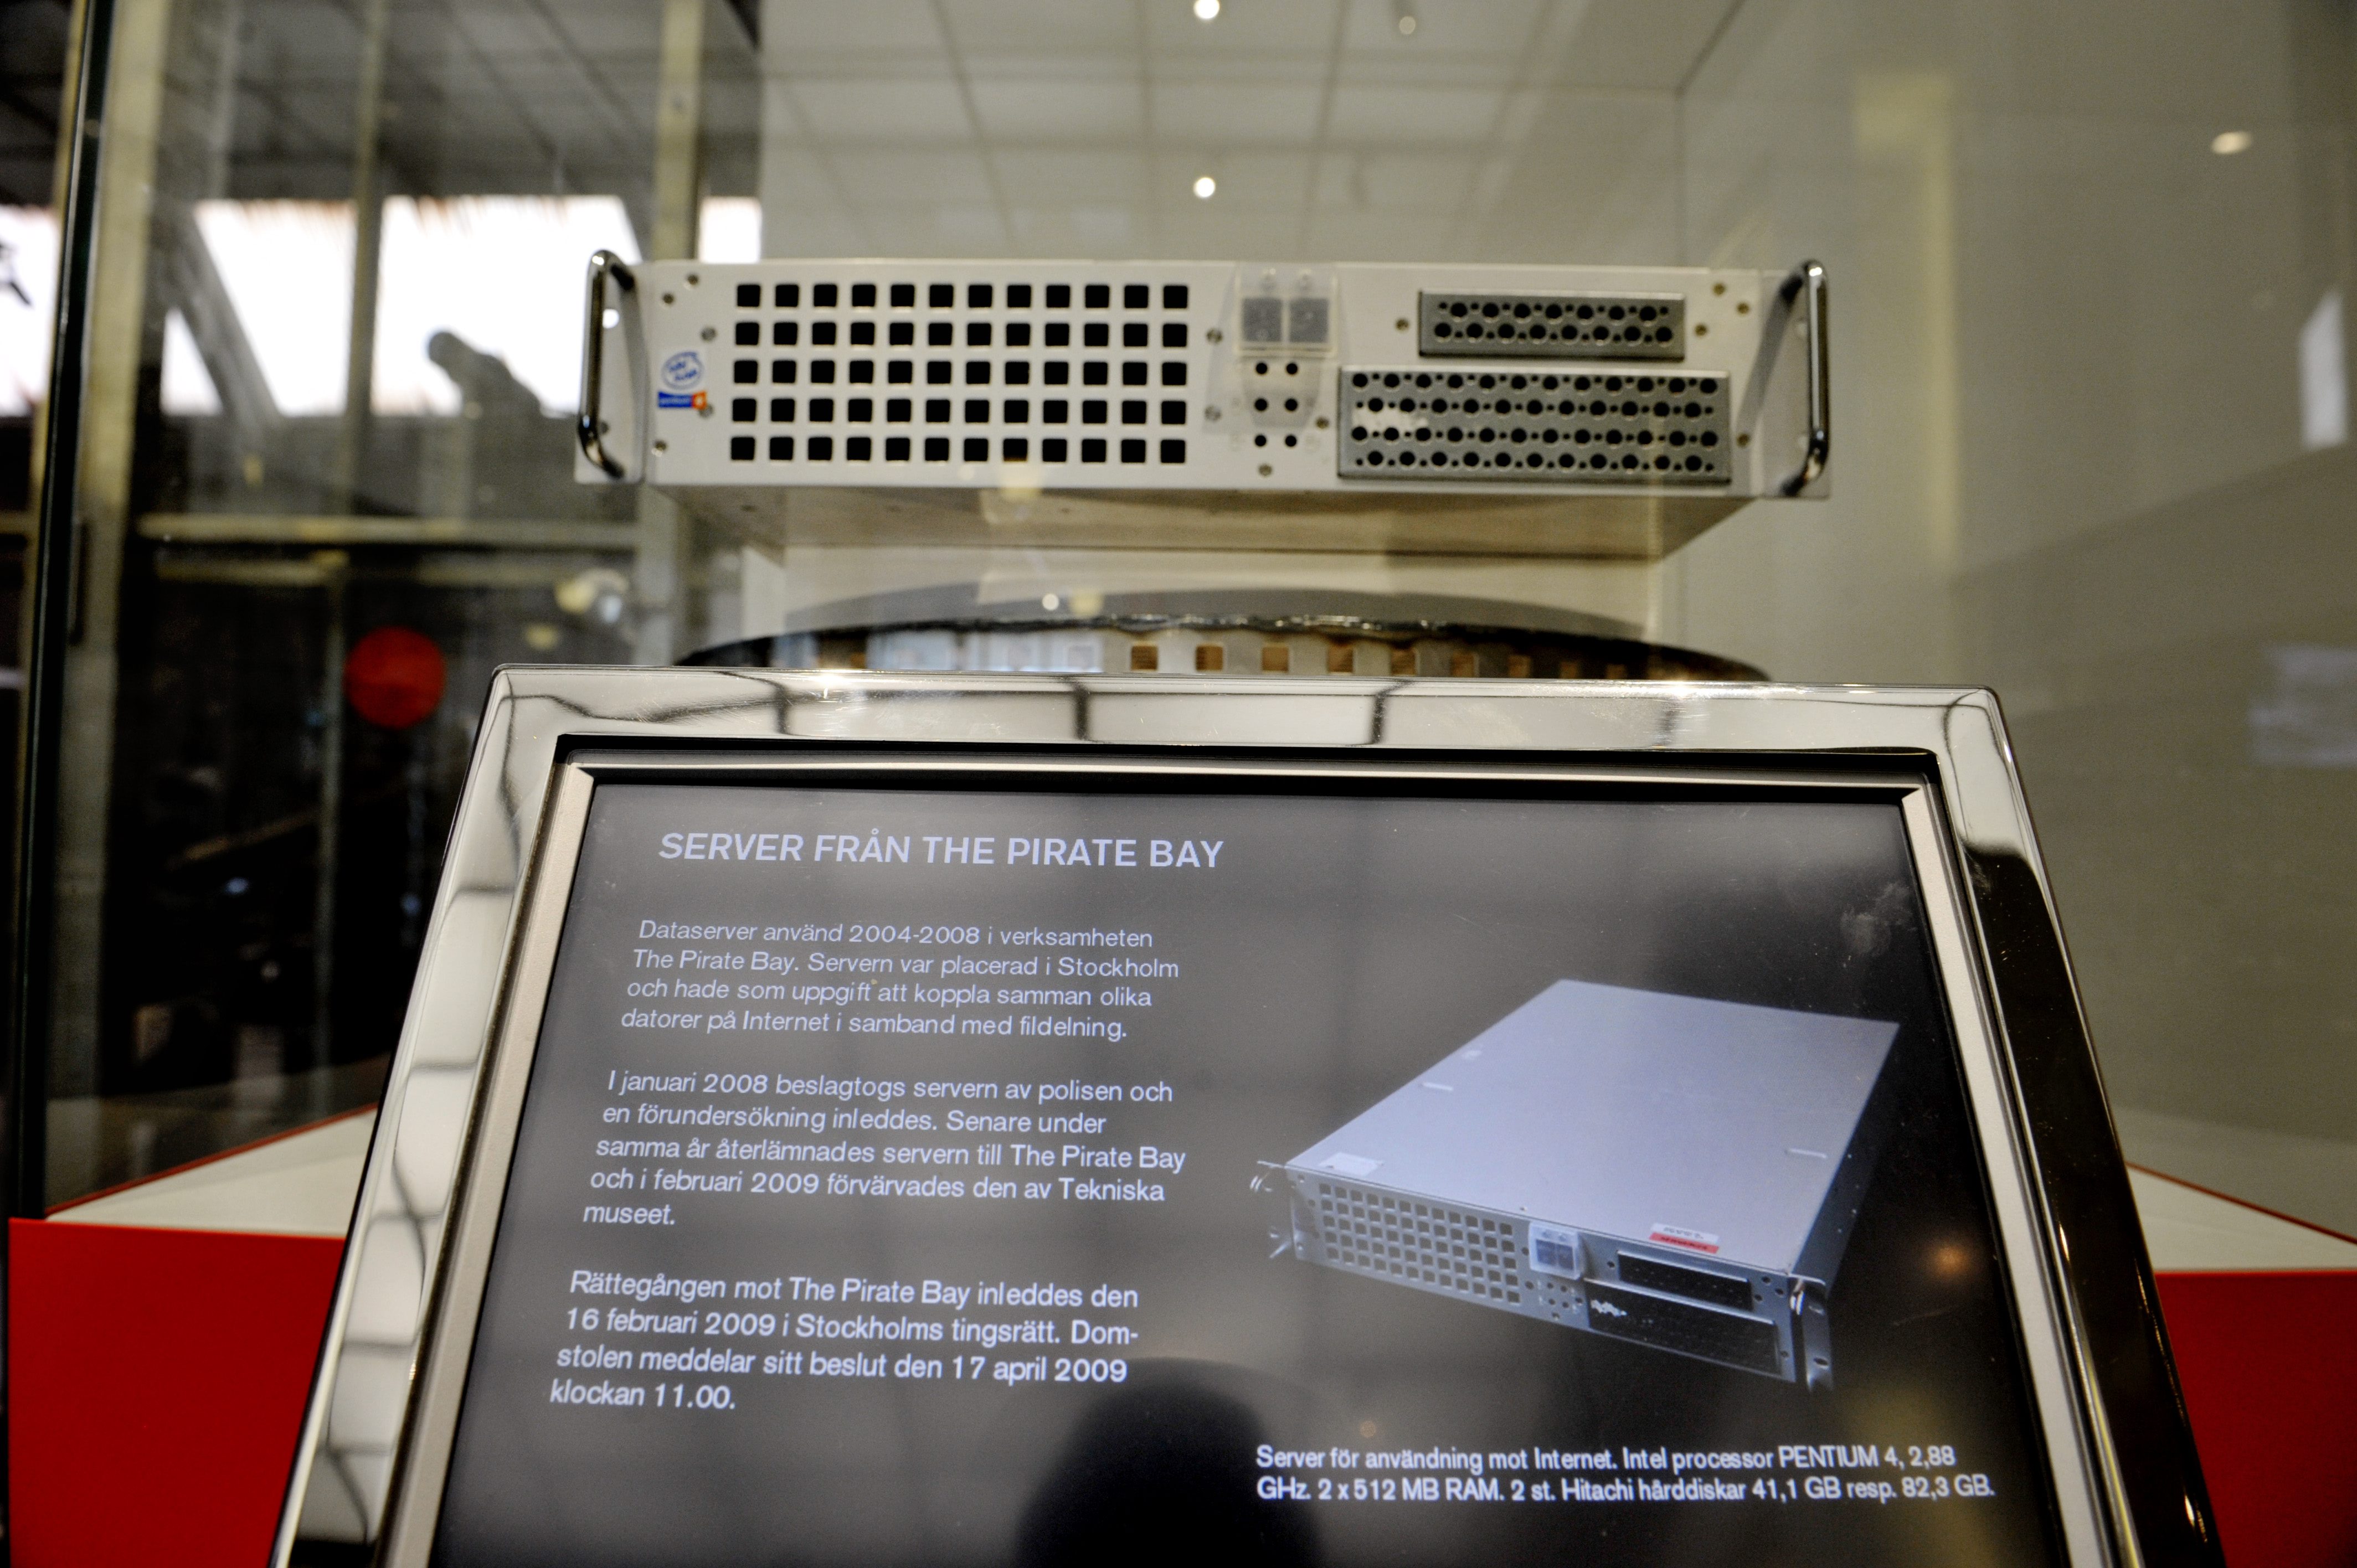 Pirate Bays första server fotograferad på Tekniska museet i Stockholm på torsdagen. Tekniska museet ställer ut den dataserver som The Pirate Bay började använda för fildelning 2004. Servern beslagtogs förra året vid en polisrazzia och i februari i år köpt